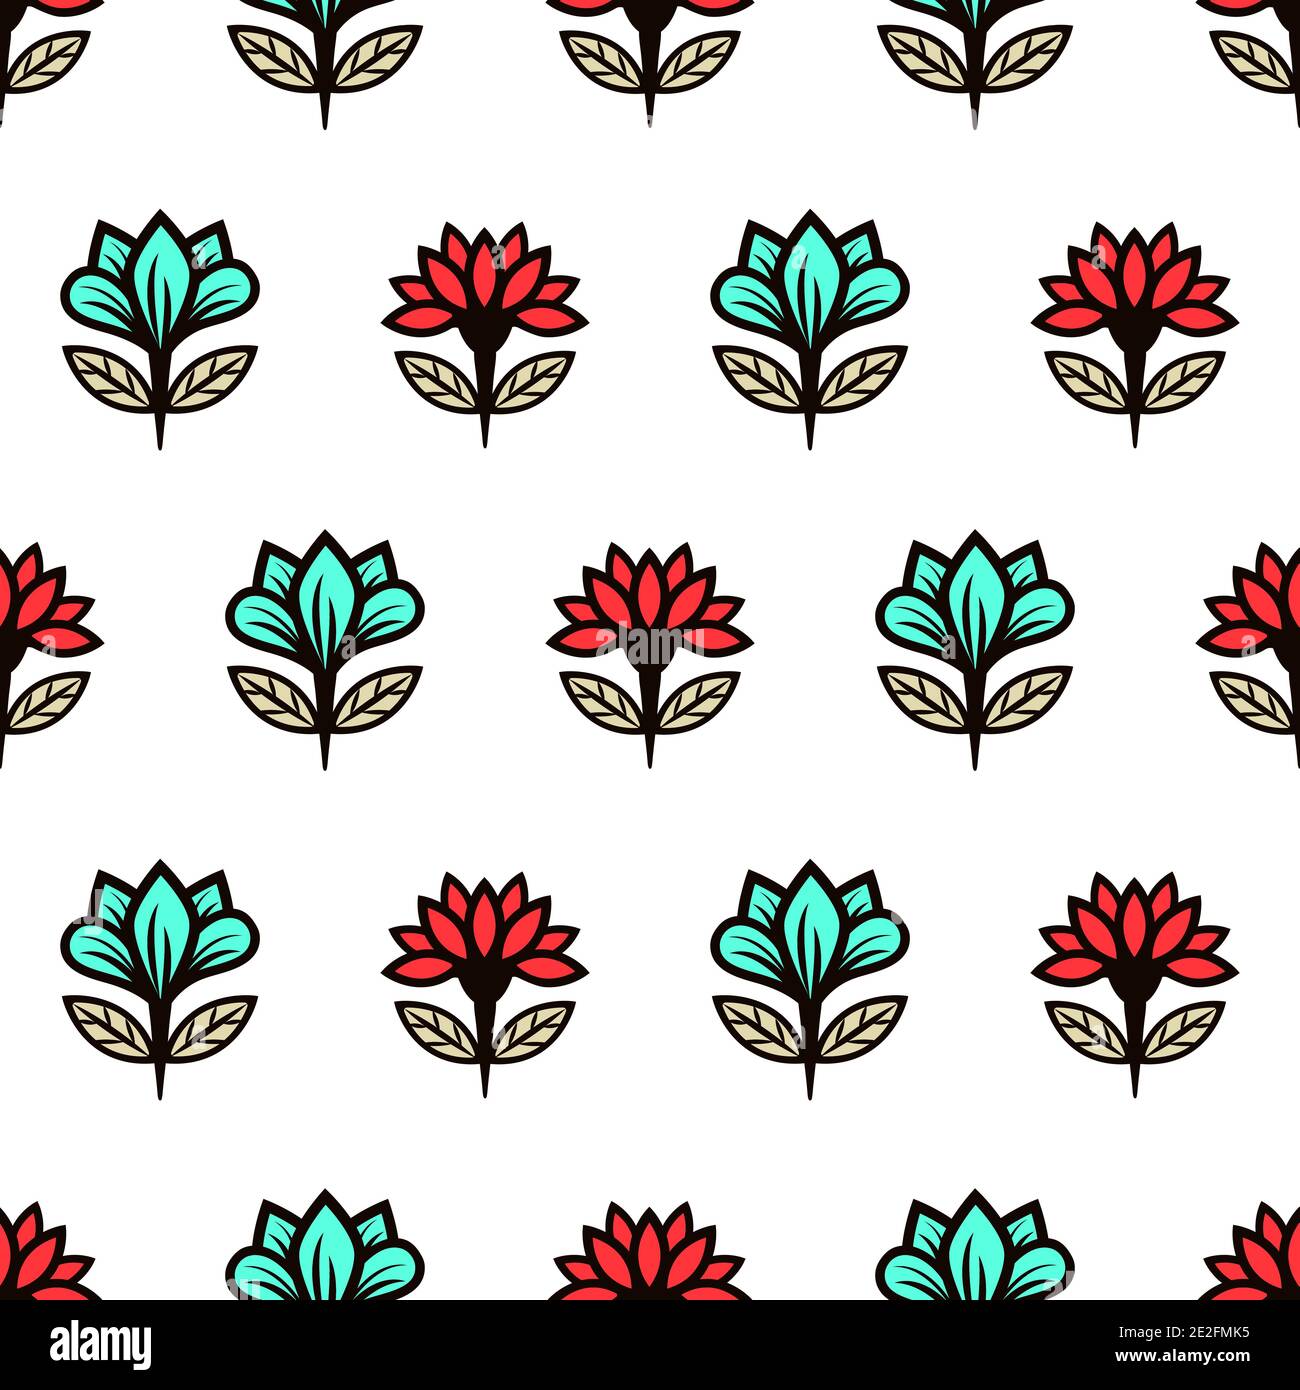 Florale Nahtloses Muster, stilvolle bunte blühende Hintergrund. Niedliche rote und türkisfarbene Knospen auf schwarzen Stielen mit grünen Blättern auf weißem Hintergrund. Für fabelhaft Stock Vektor